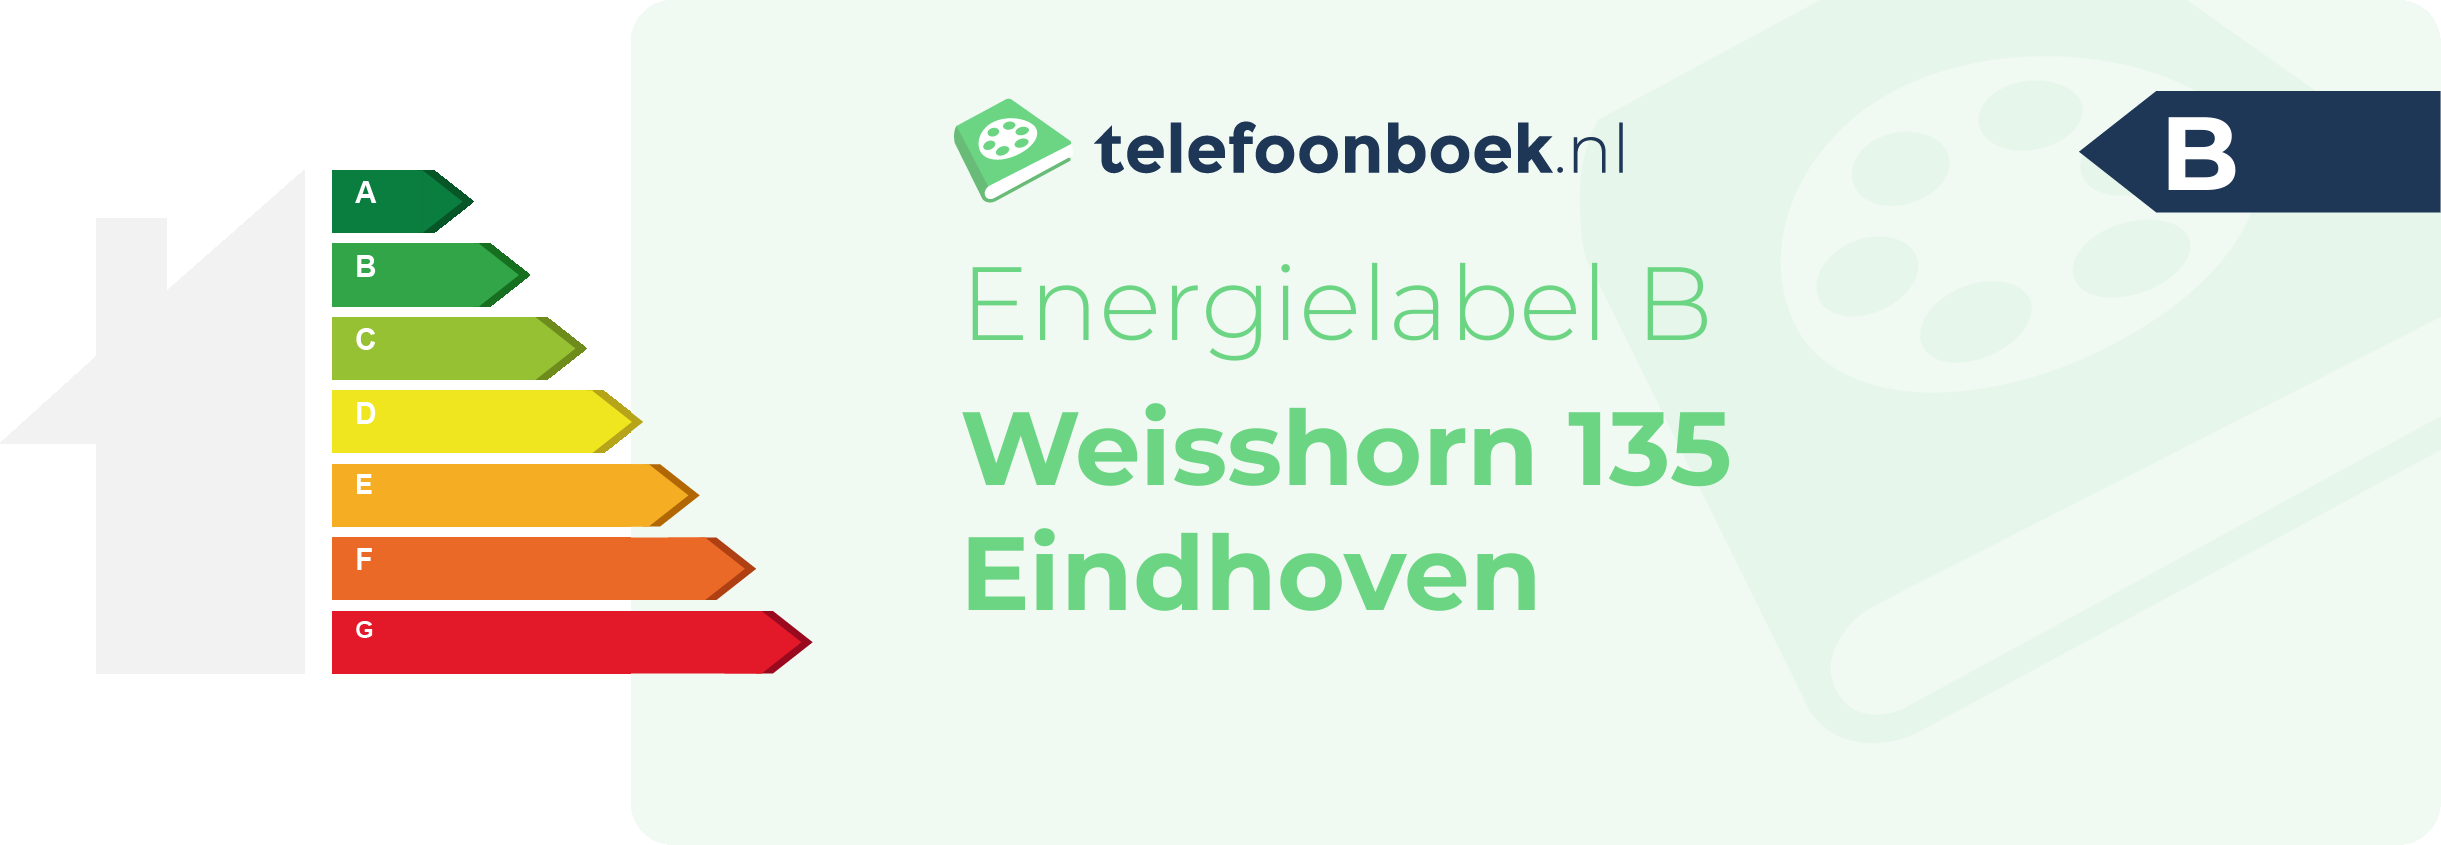 Energielabel Weisshorn 135 Eindhoven